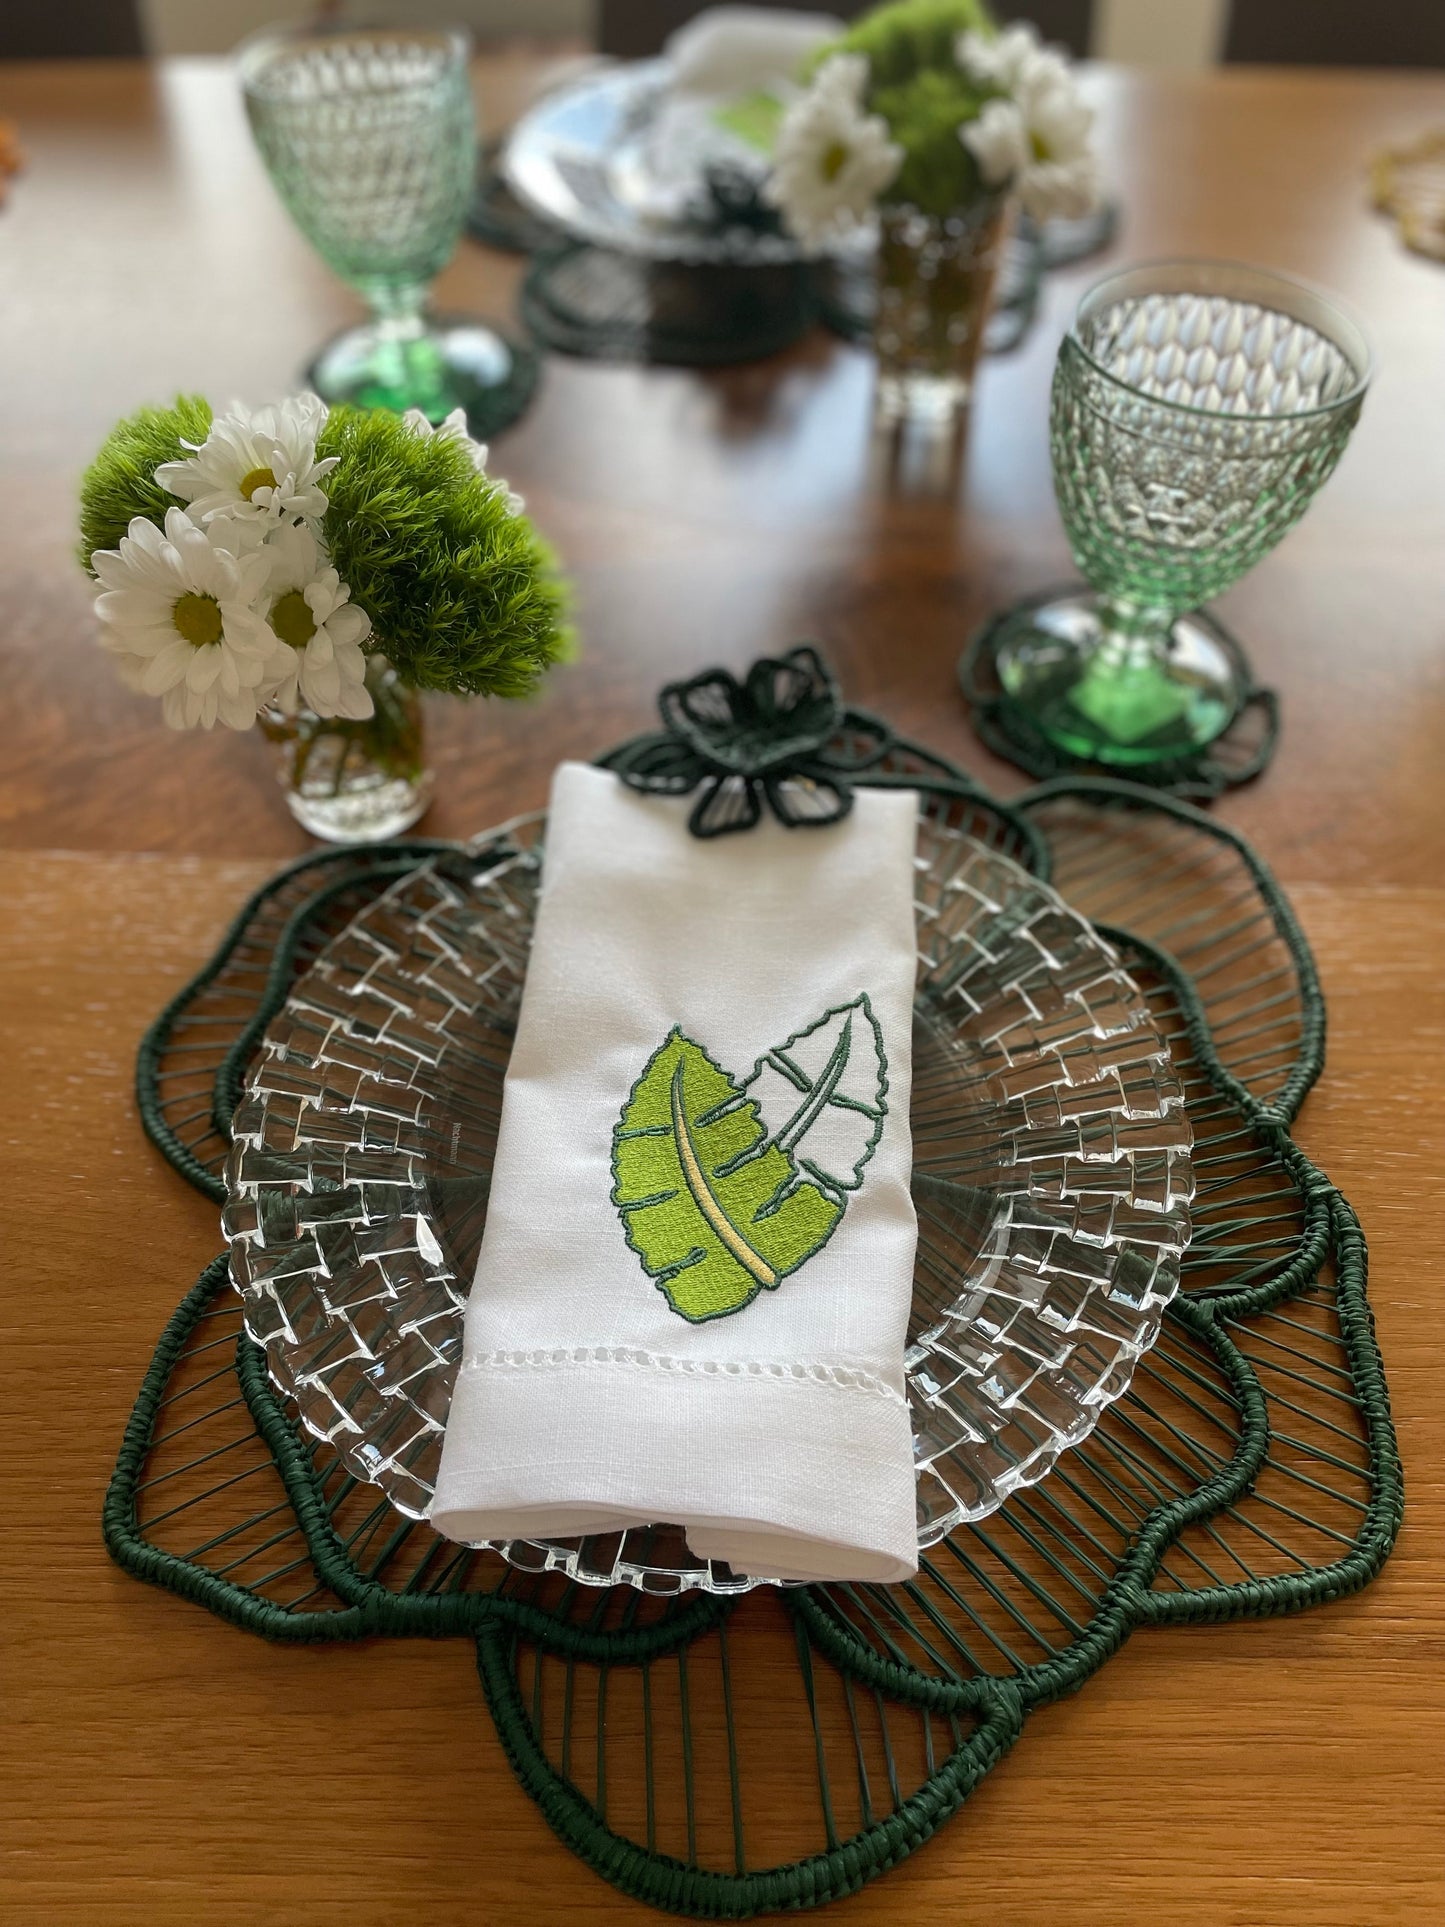 Artisan Woven Green Coasters